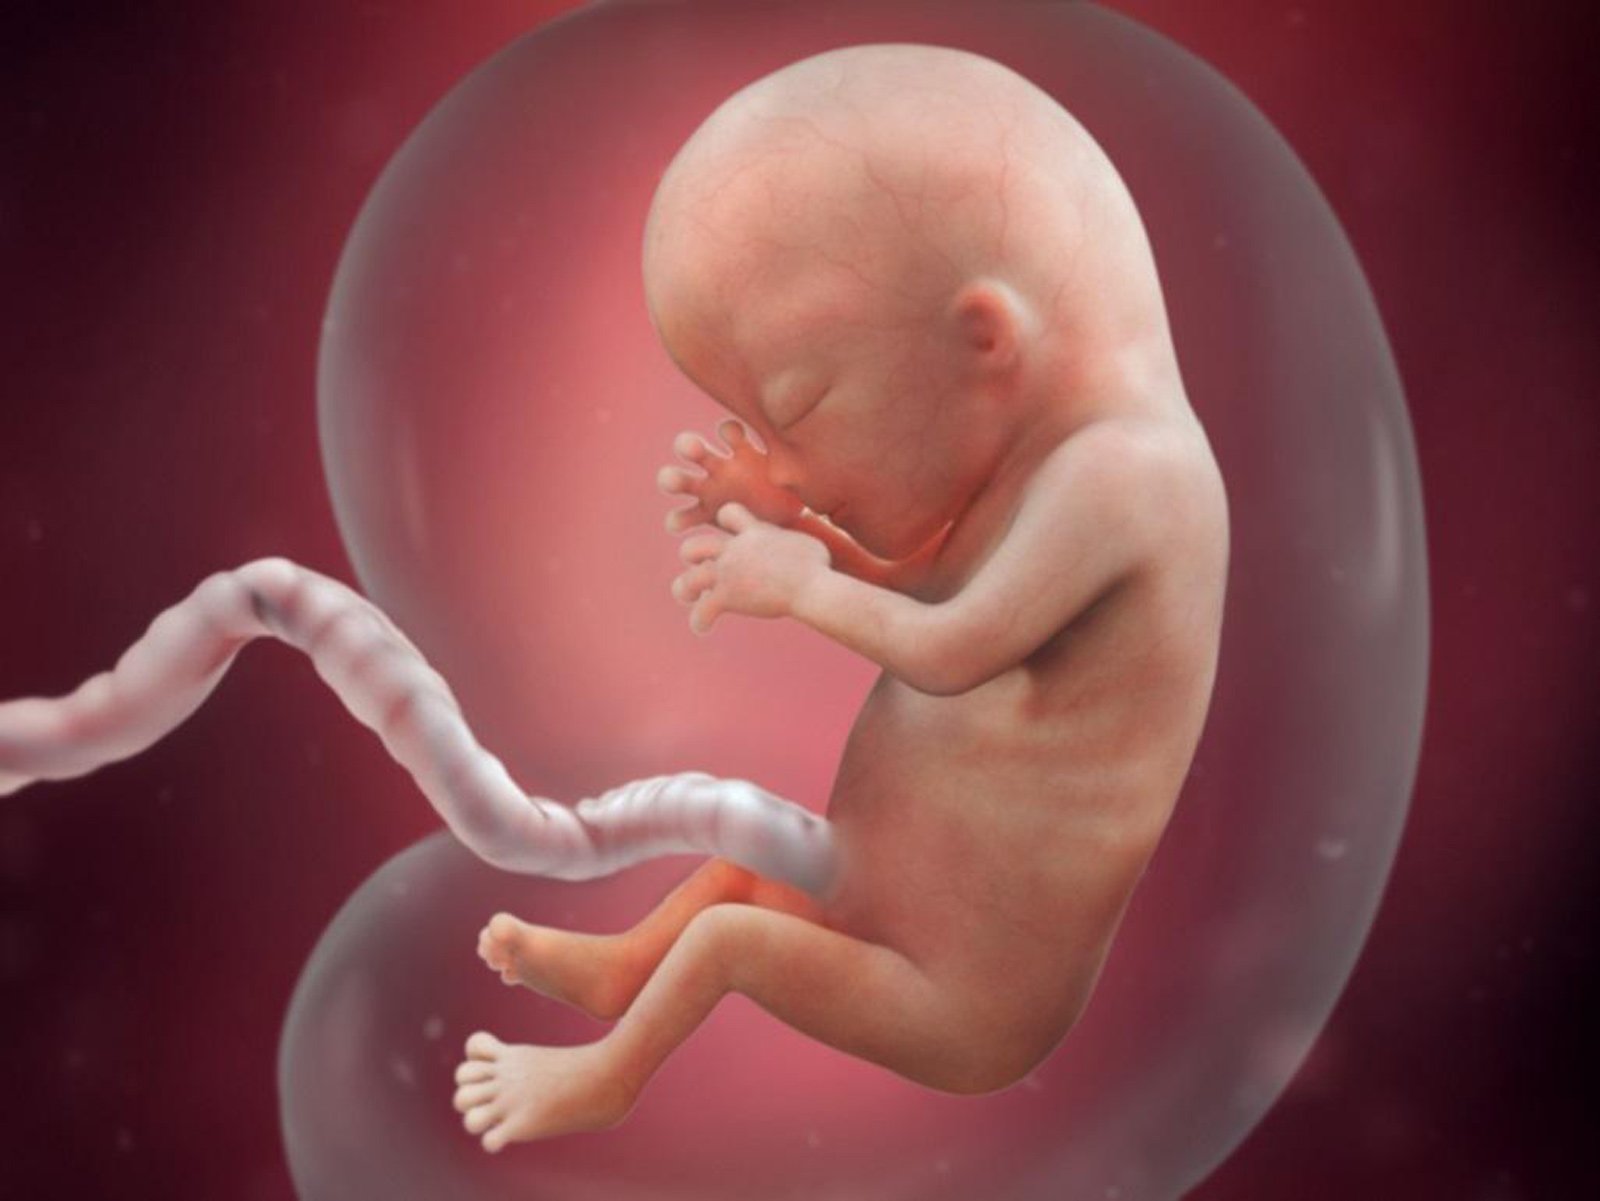 Плод 13 недель развития. Эмбрион на 13 неделе беременности. 13 Недель беременности фото плода.